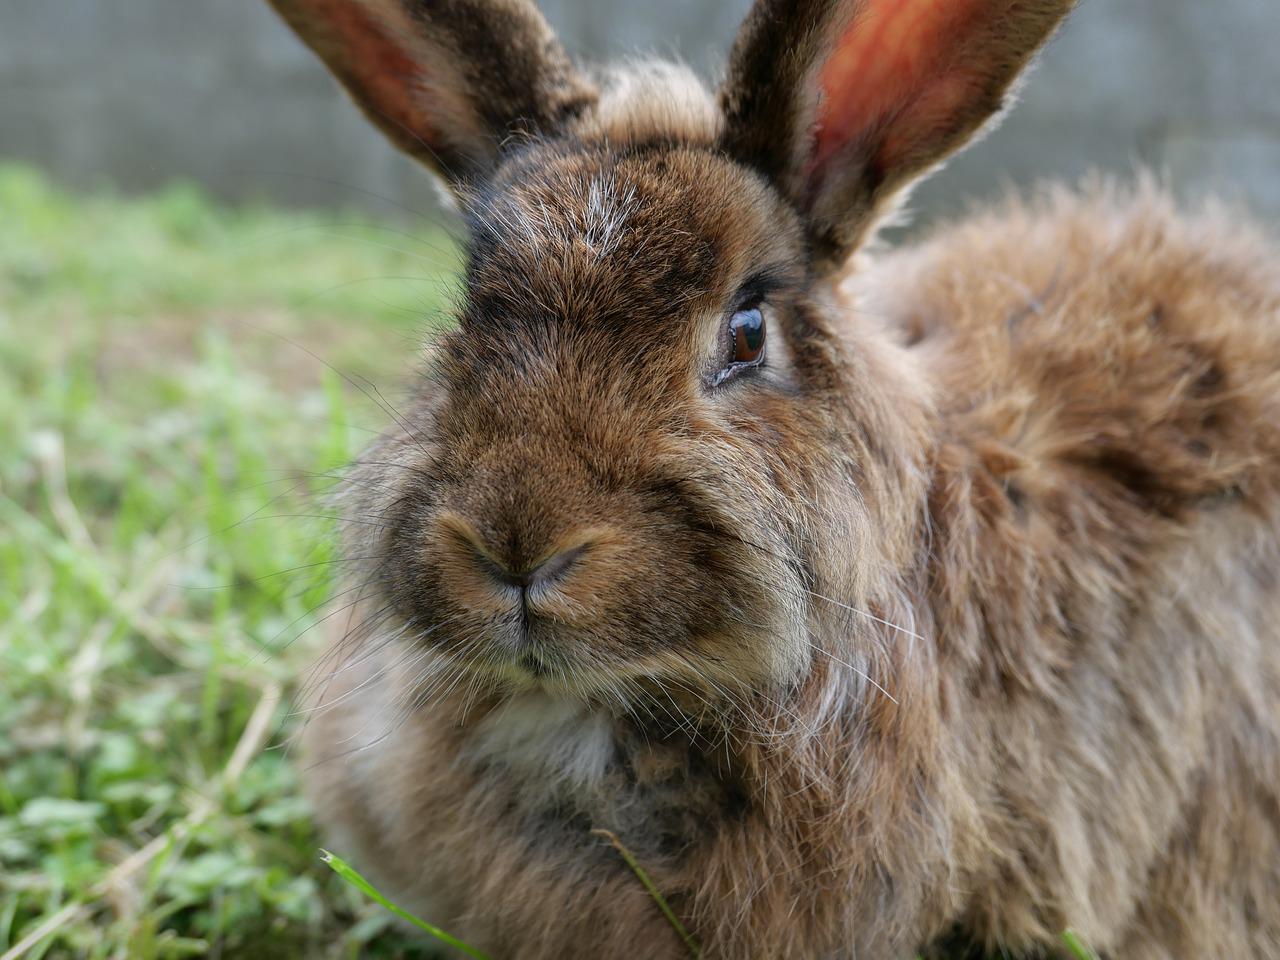 rabbit's face showing split lip